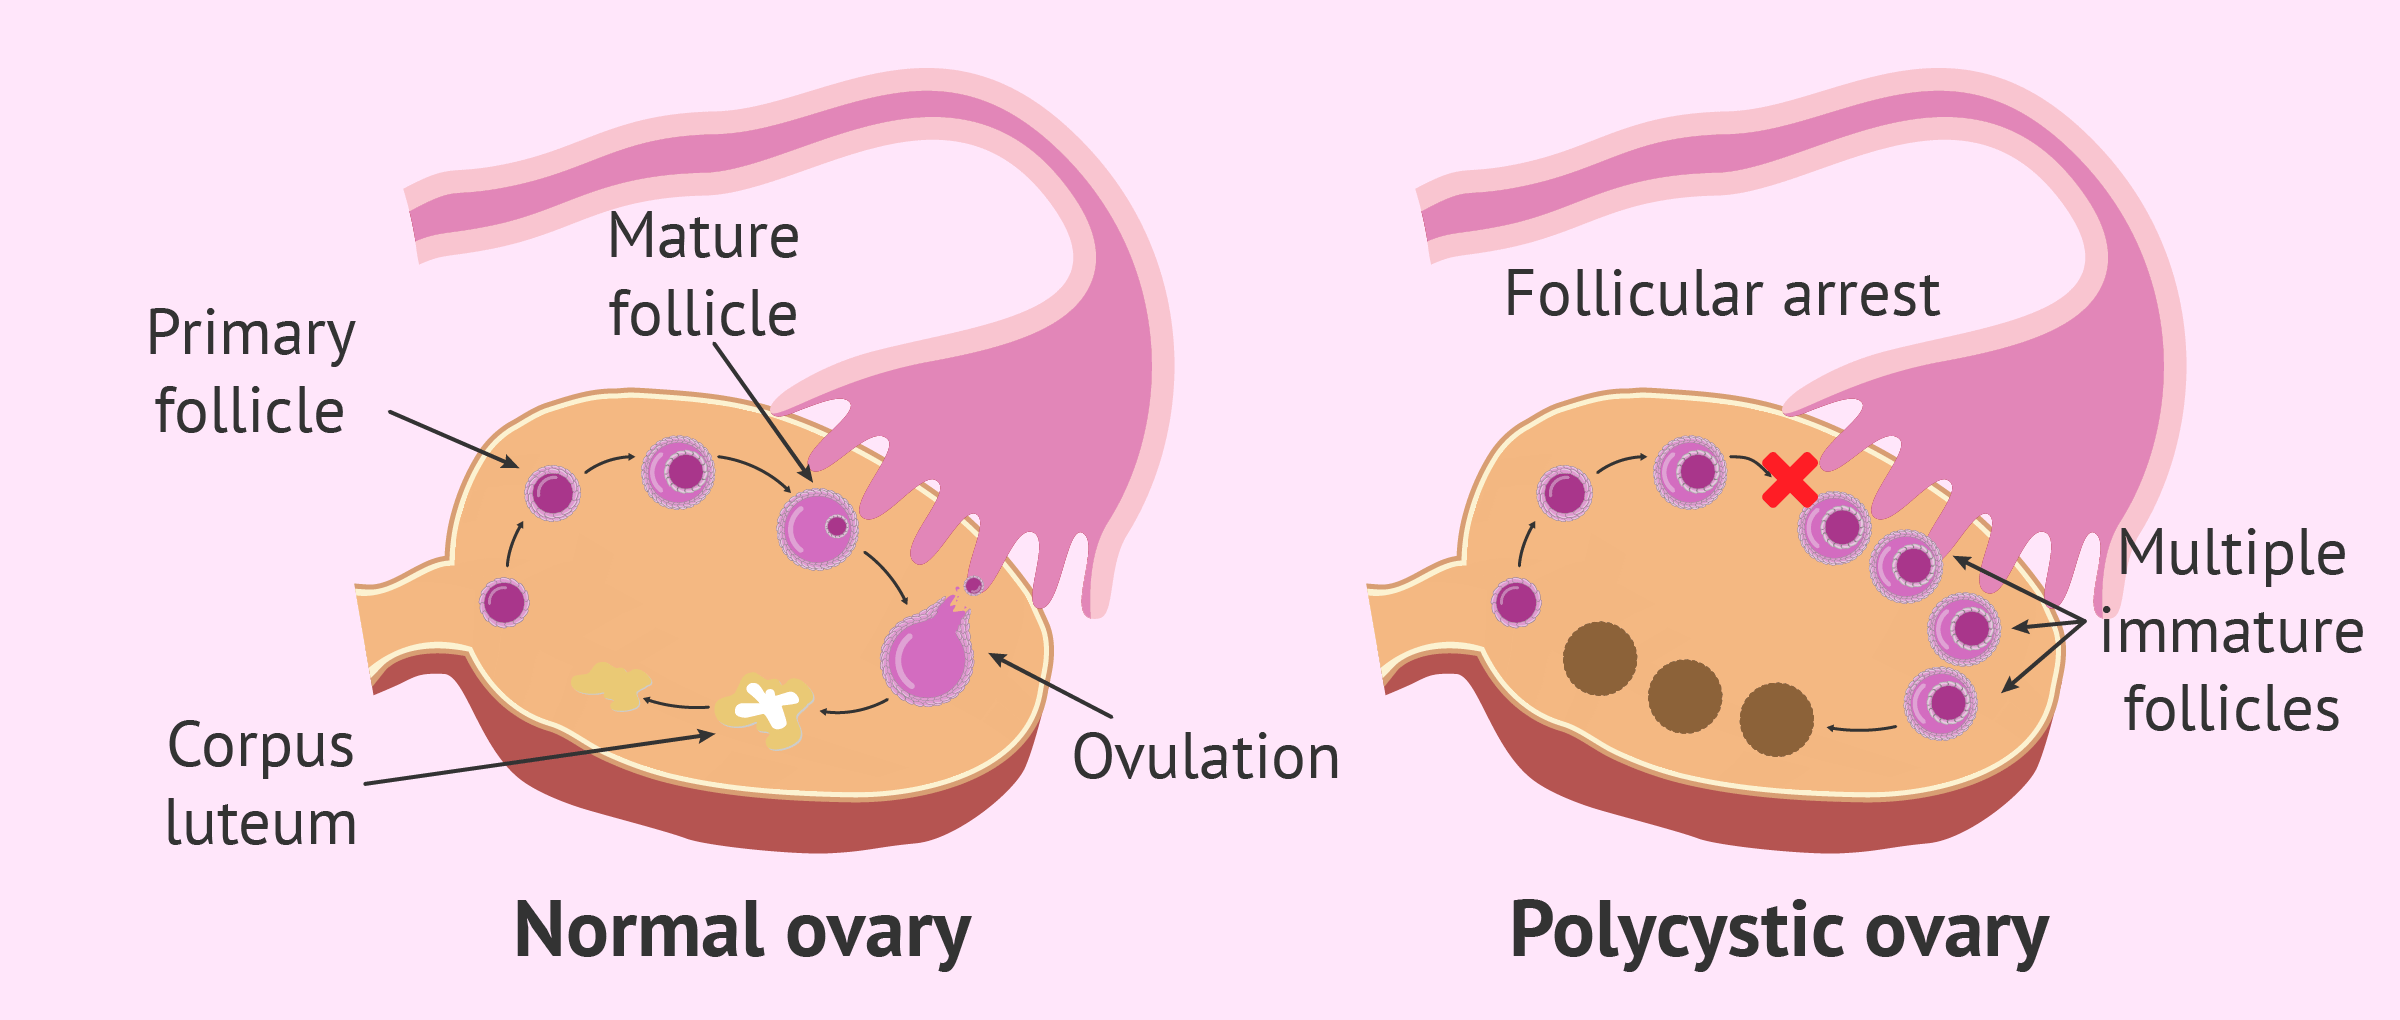 Estrogenos ovarios poliquisticos